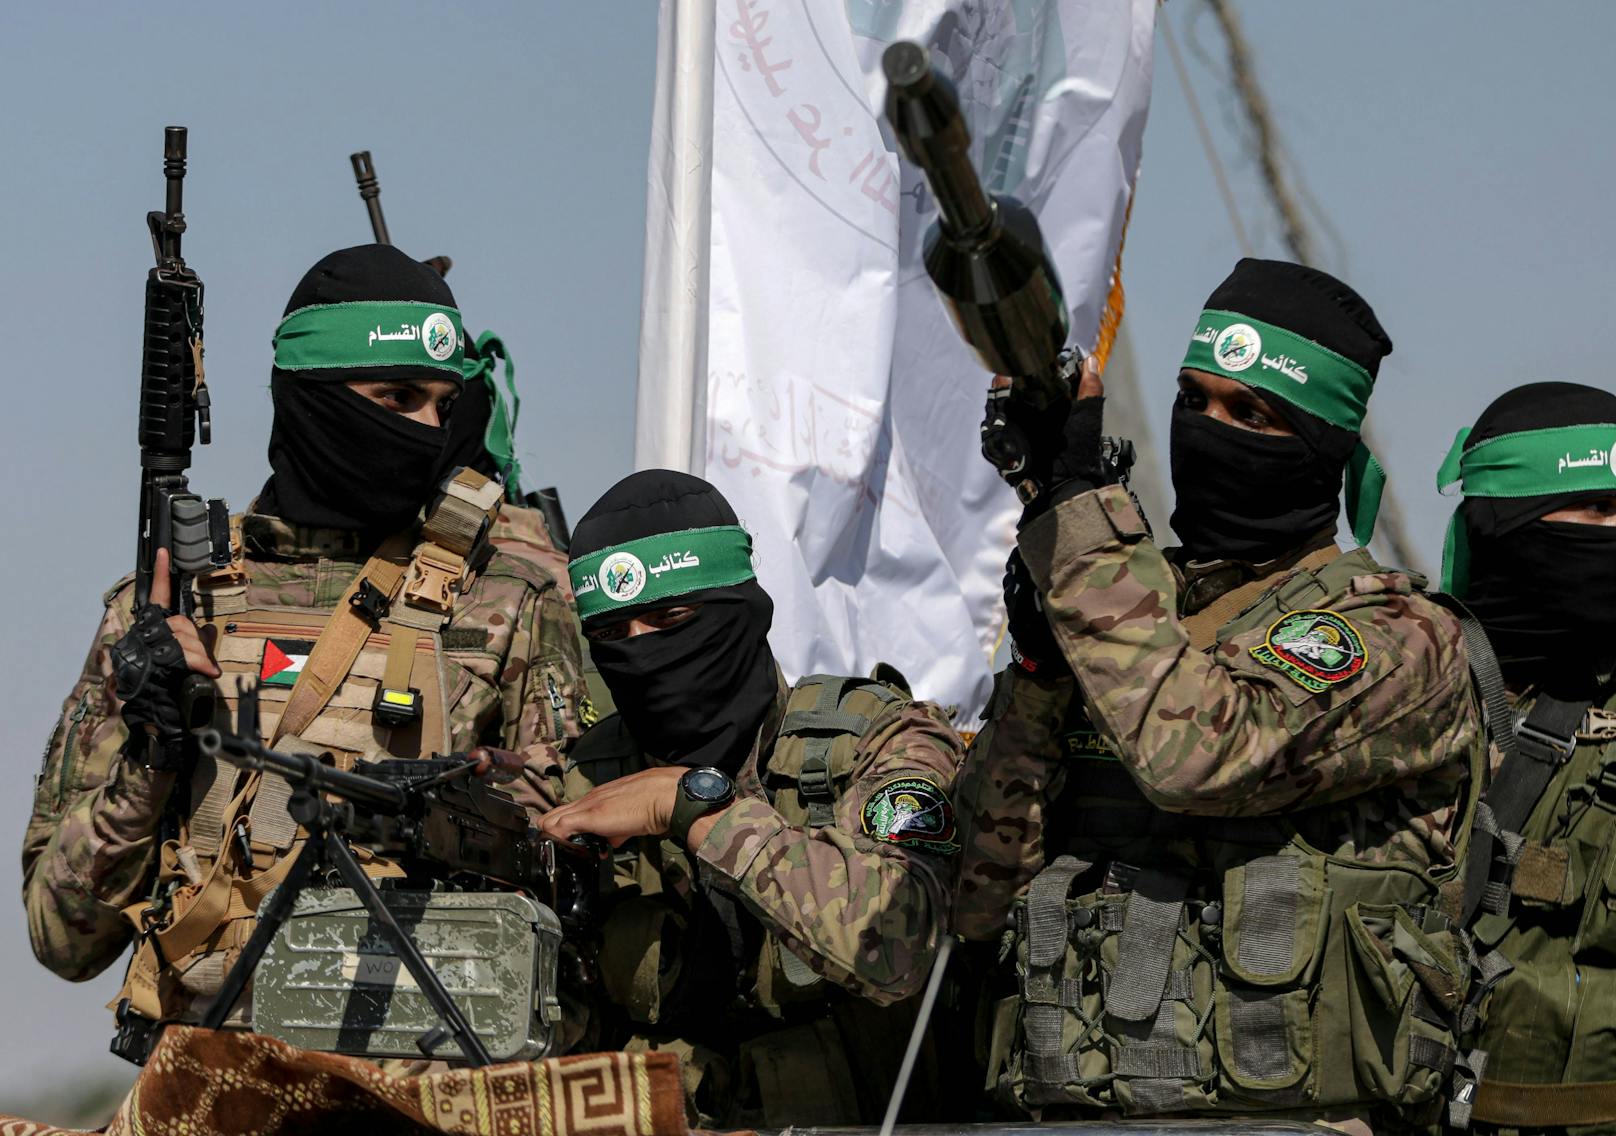 "X" löscht zehntausend Beiträge mit Hamas-Propaganda